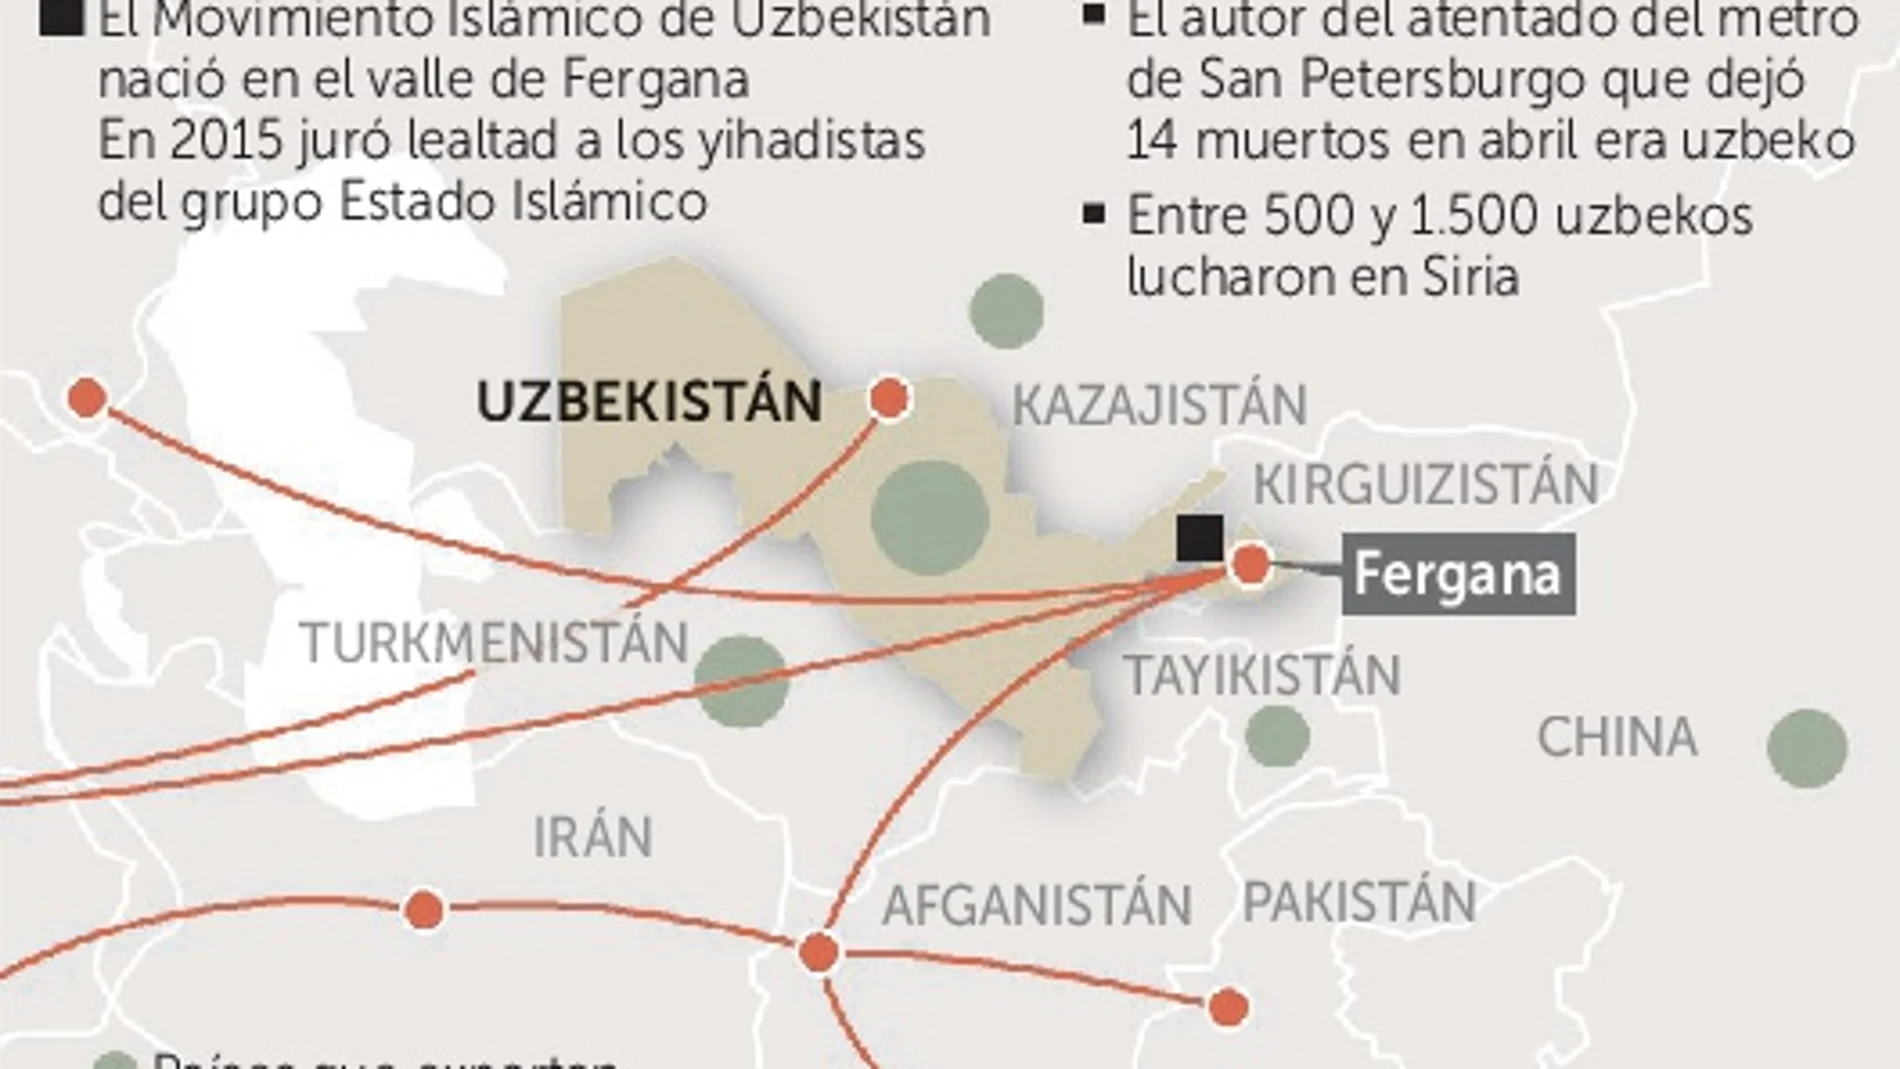 Uzbekistán, el nido yihadista de Asia central